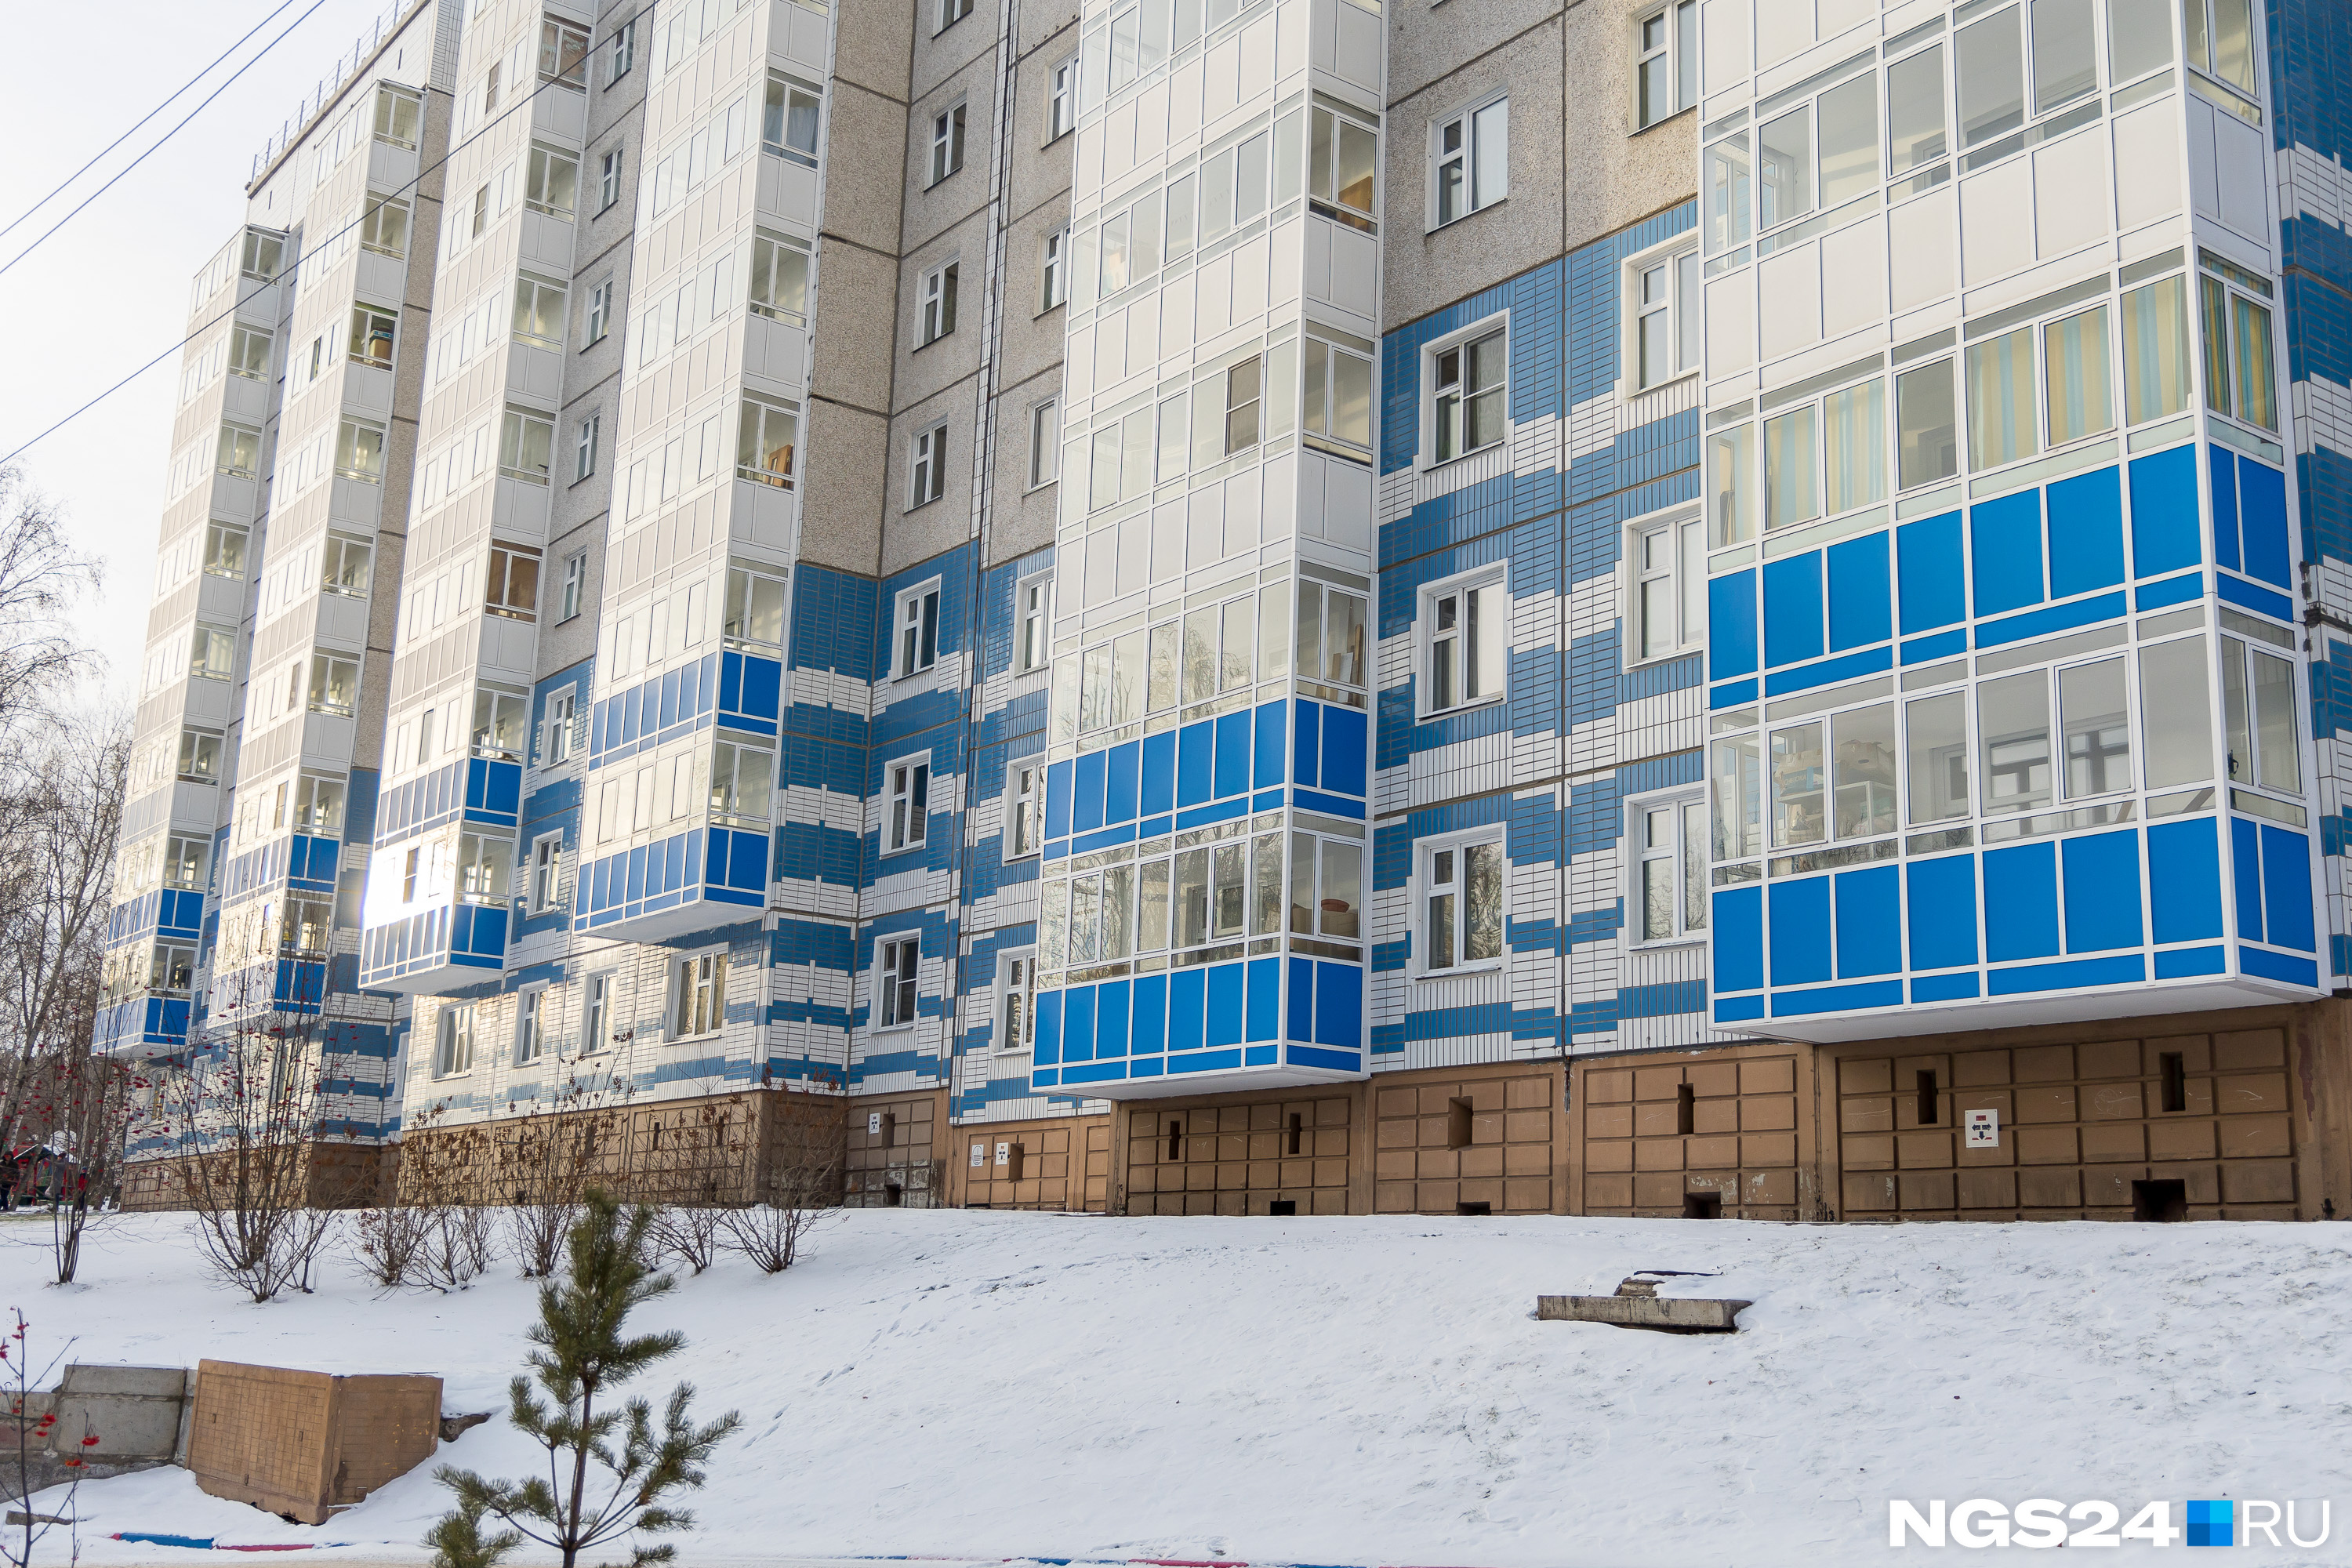 Несколько 40-метровых квартир продается тут по 4 и 4,8 миллиона рублей